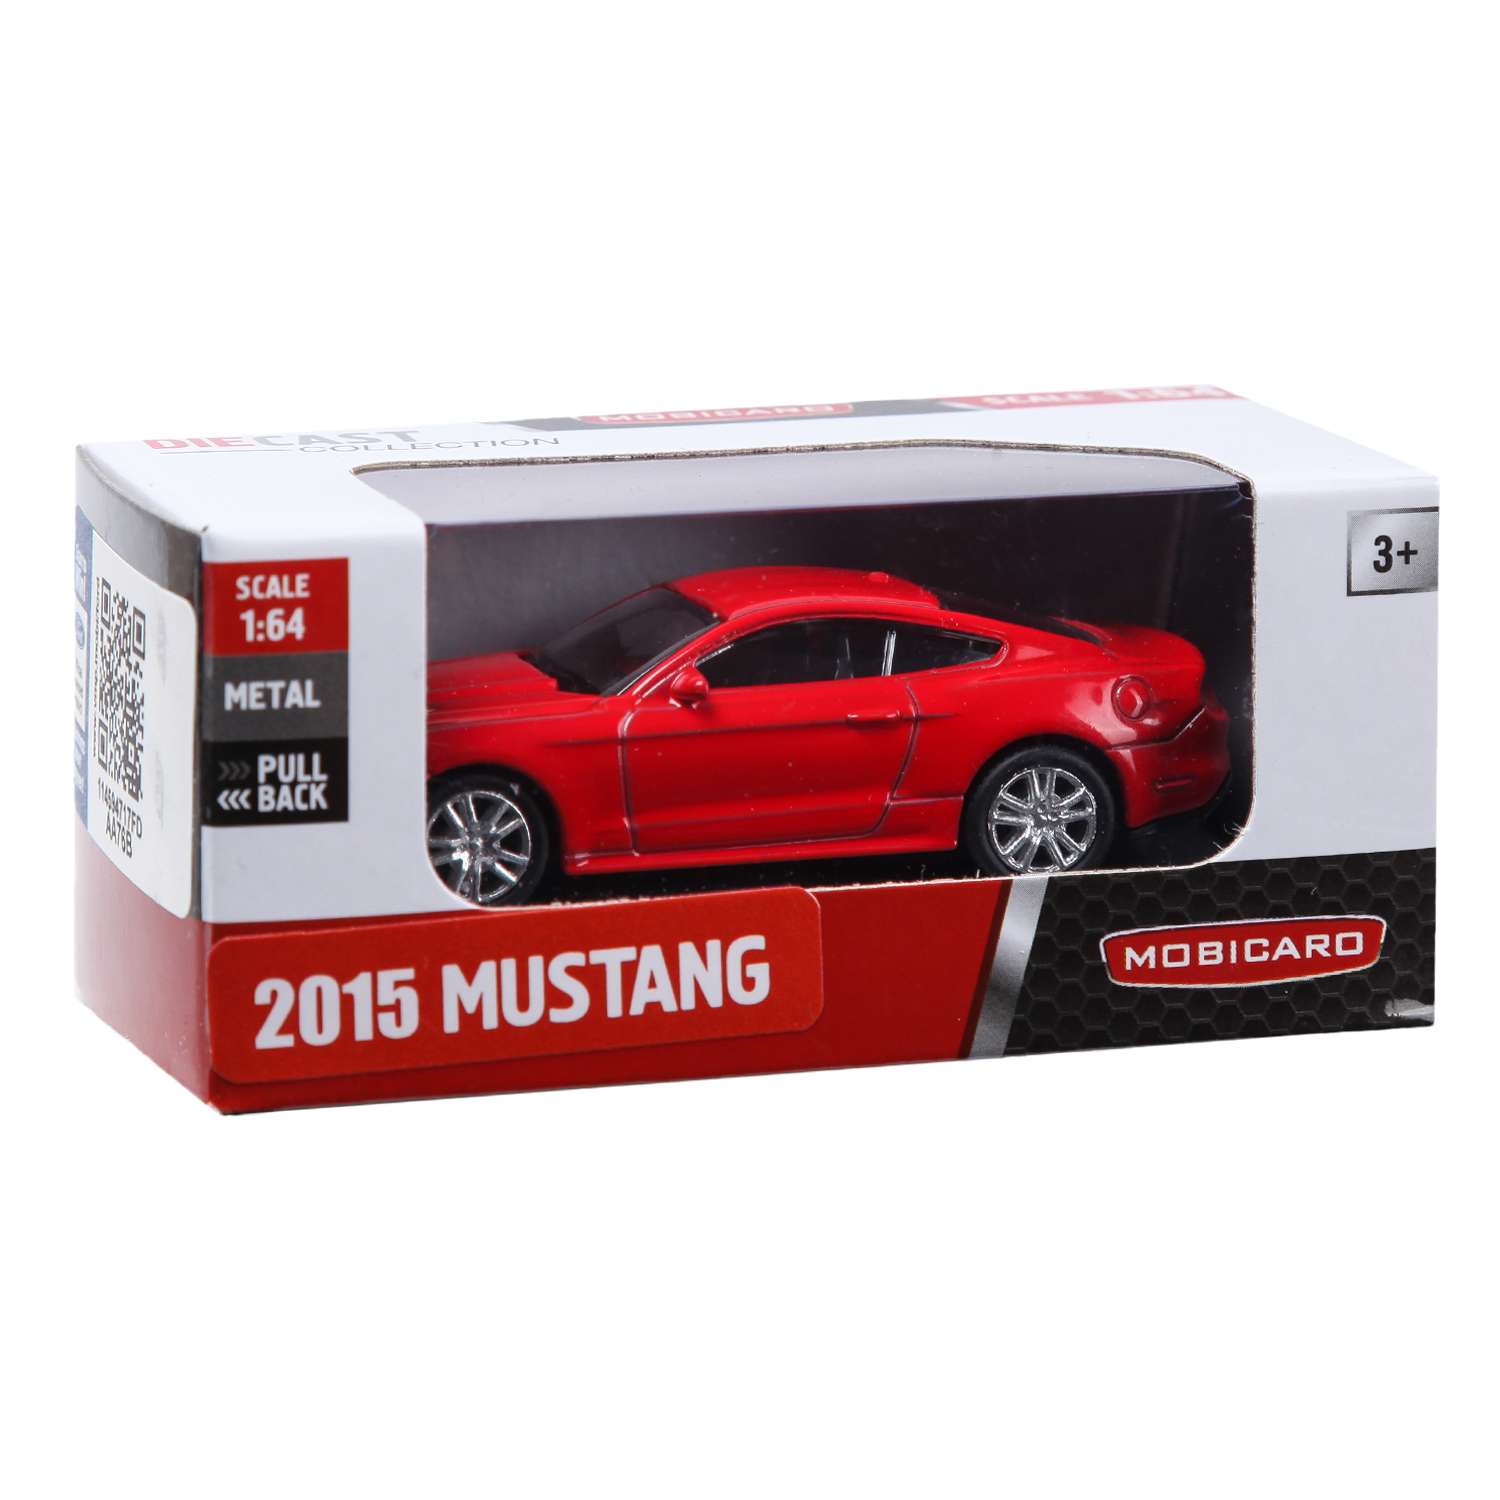 Машинка Mobicaro 1:64 Mustang 2015 Mustang 354028 - фото 2